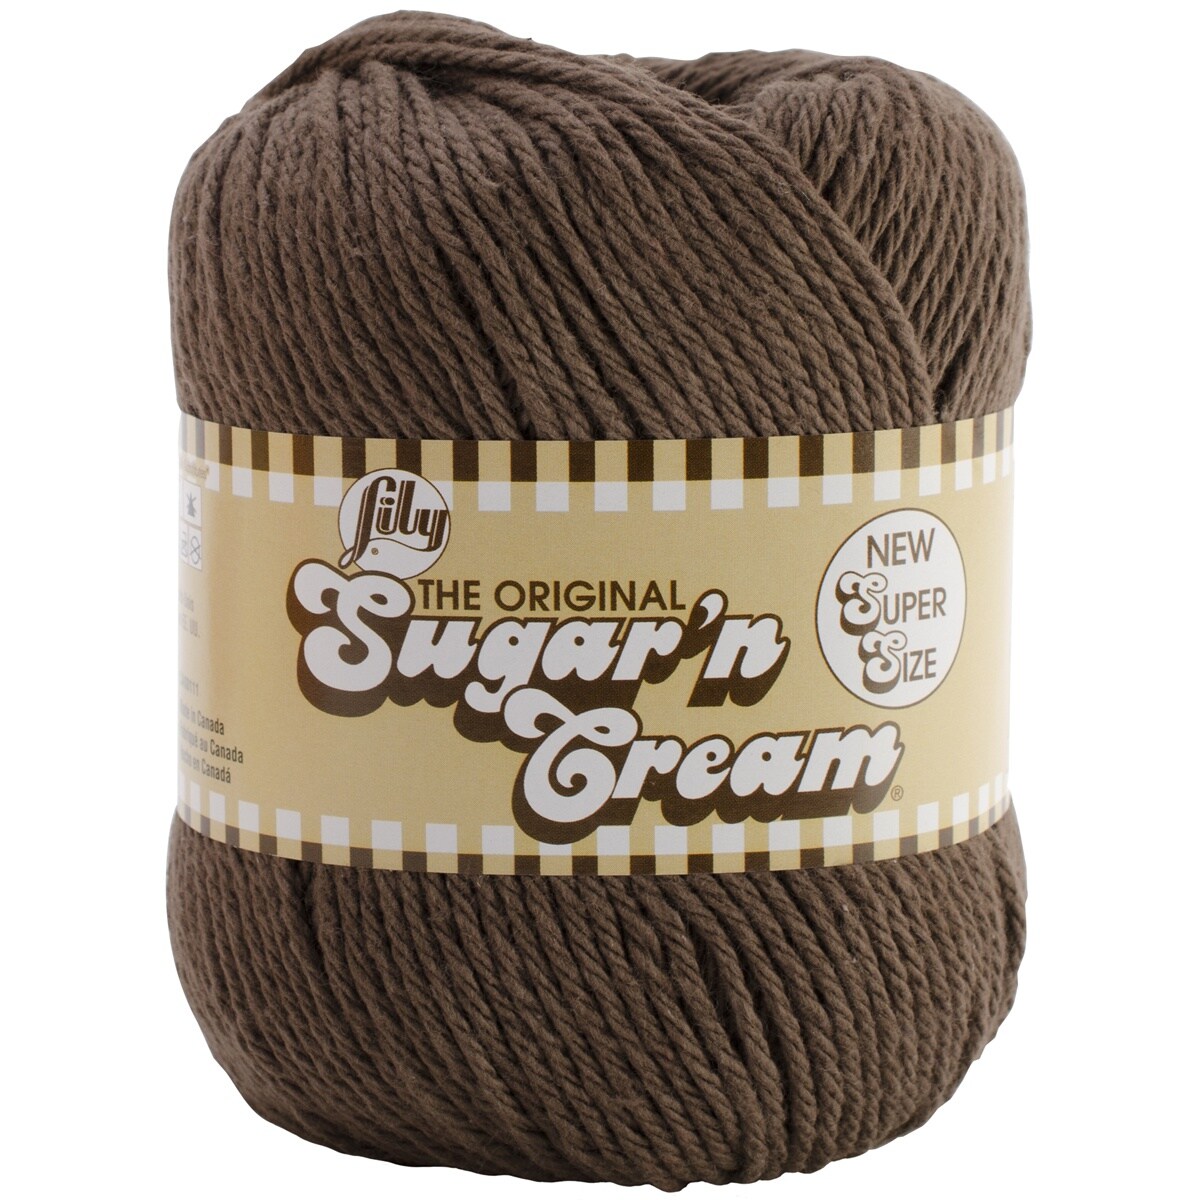 Lily Sugar 'n' Cream Yarn